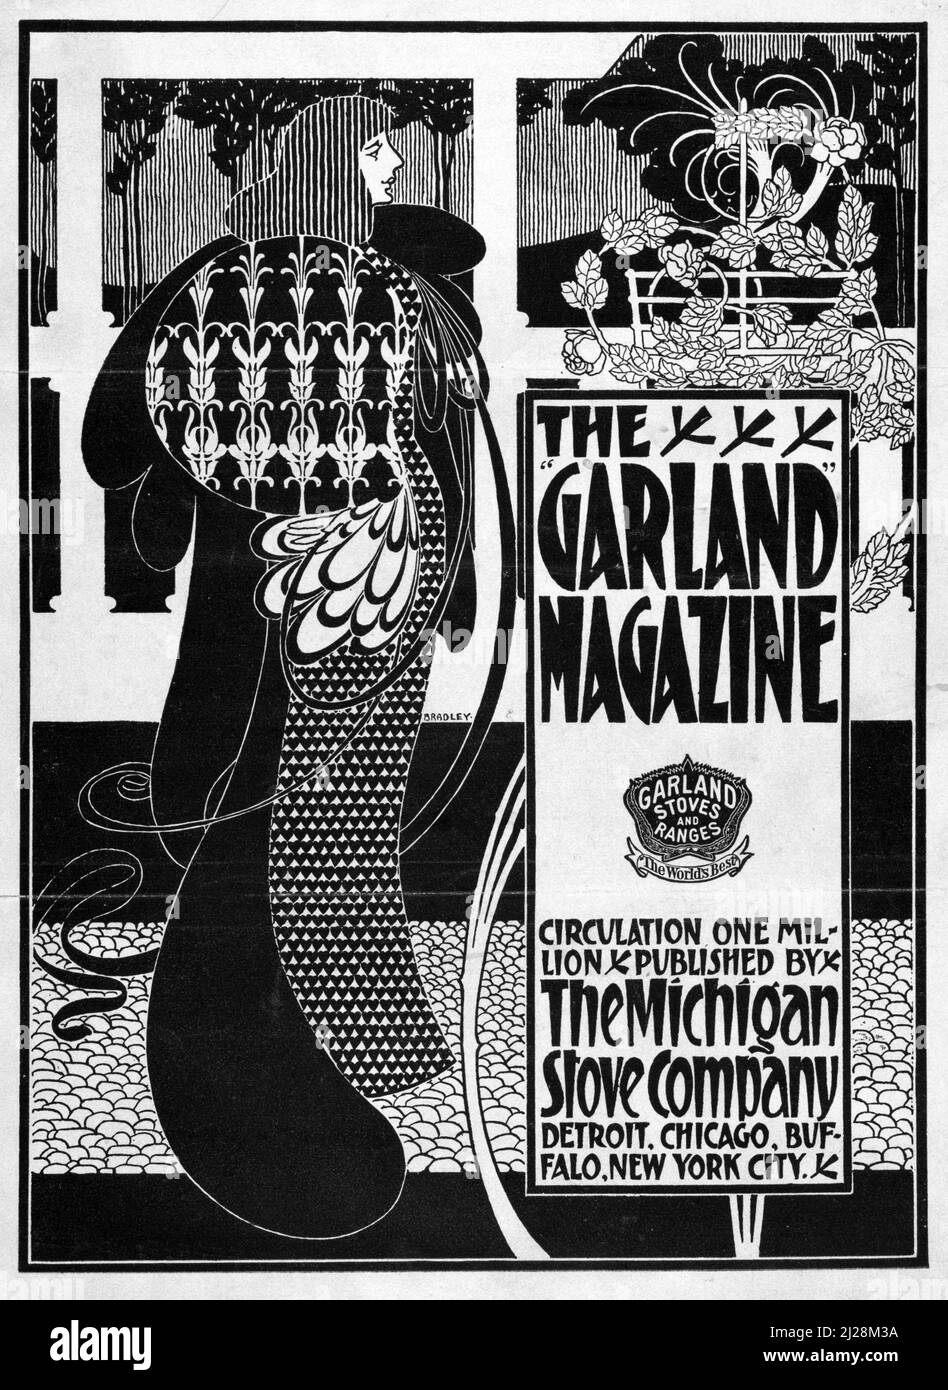 Œuvres d'art de will Bradley - The Garland Magazine (1894-1896) American Art Nouveau - affiche ancienne et ancienne / couverture de magazine en noir et blanc. Banque D'Images